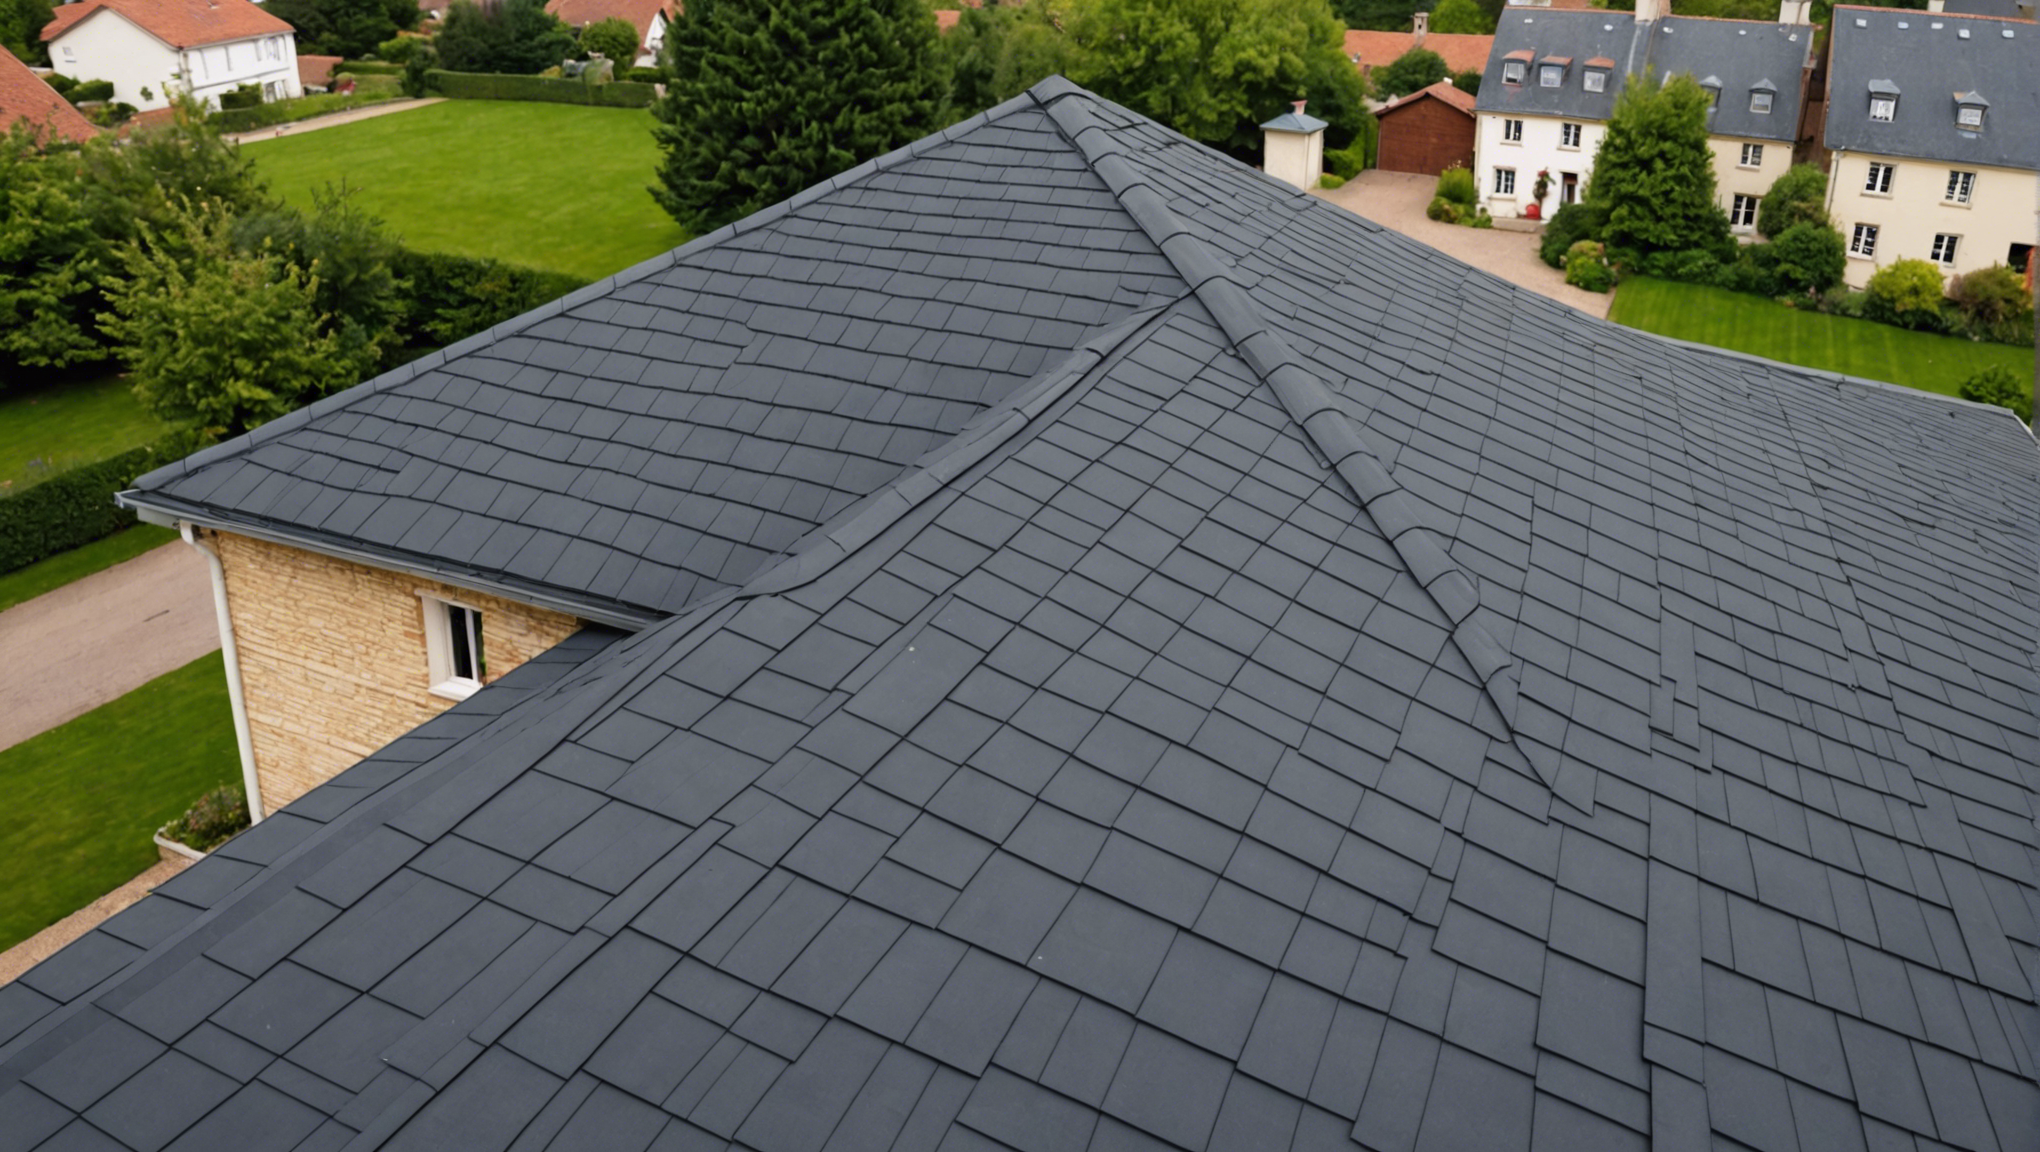 découvrez nos conseils pour réussir l'isolation de votre toiture avec dow building solutions france. profitez de solutions innovantes pour améliorer l'efficacité énergétique de votre maison.